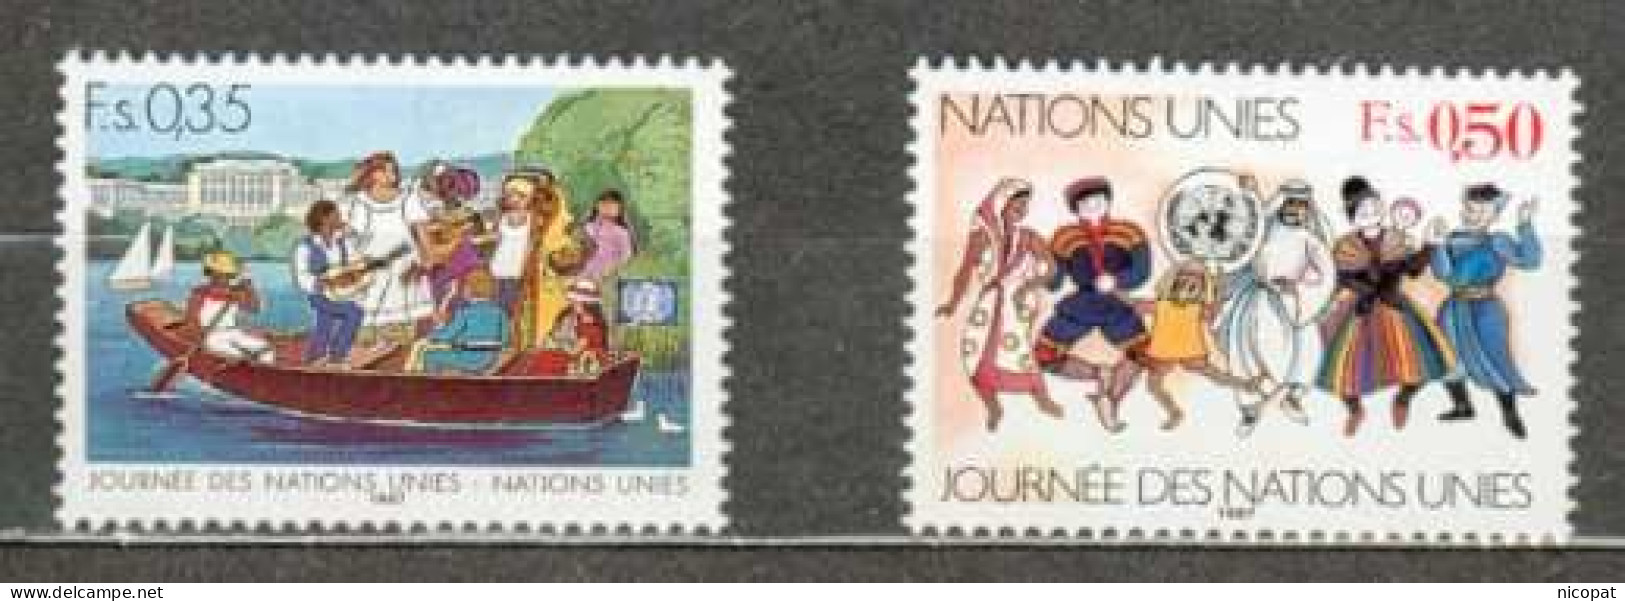 ONU GENEVE MNH ** 158-159 Journée Des Nations Unies Barque Sur Un Lac Costumes Nationaux Folklore - Unused Stamps